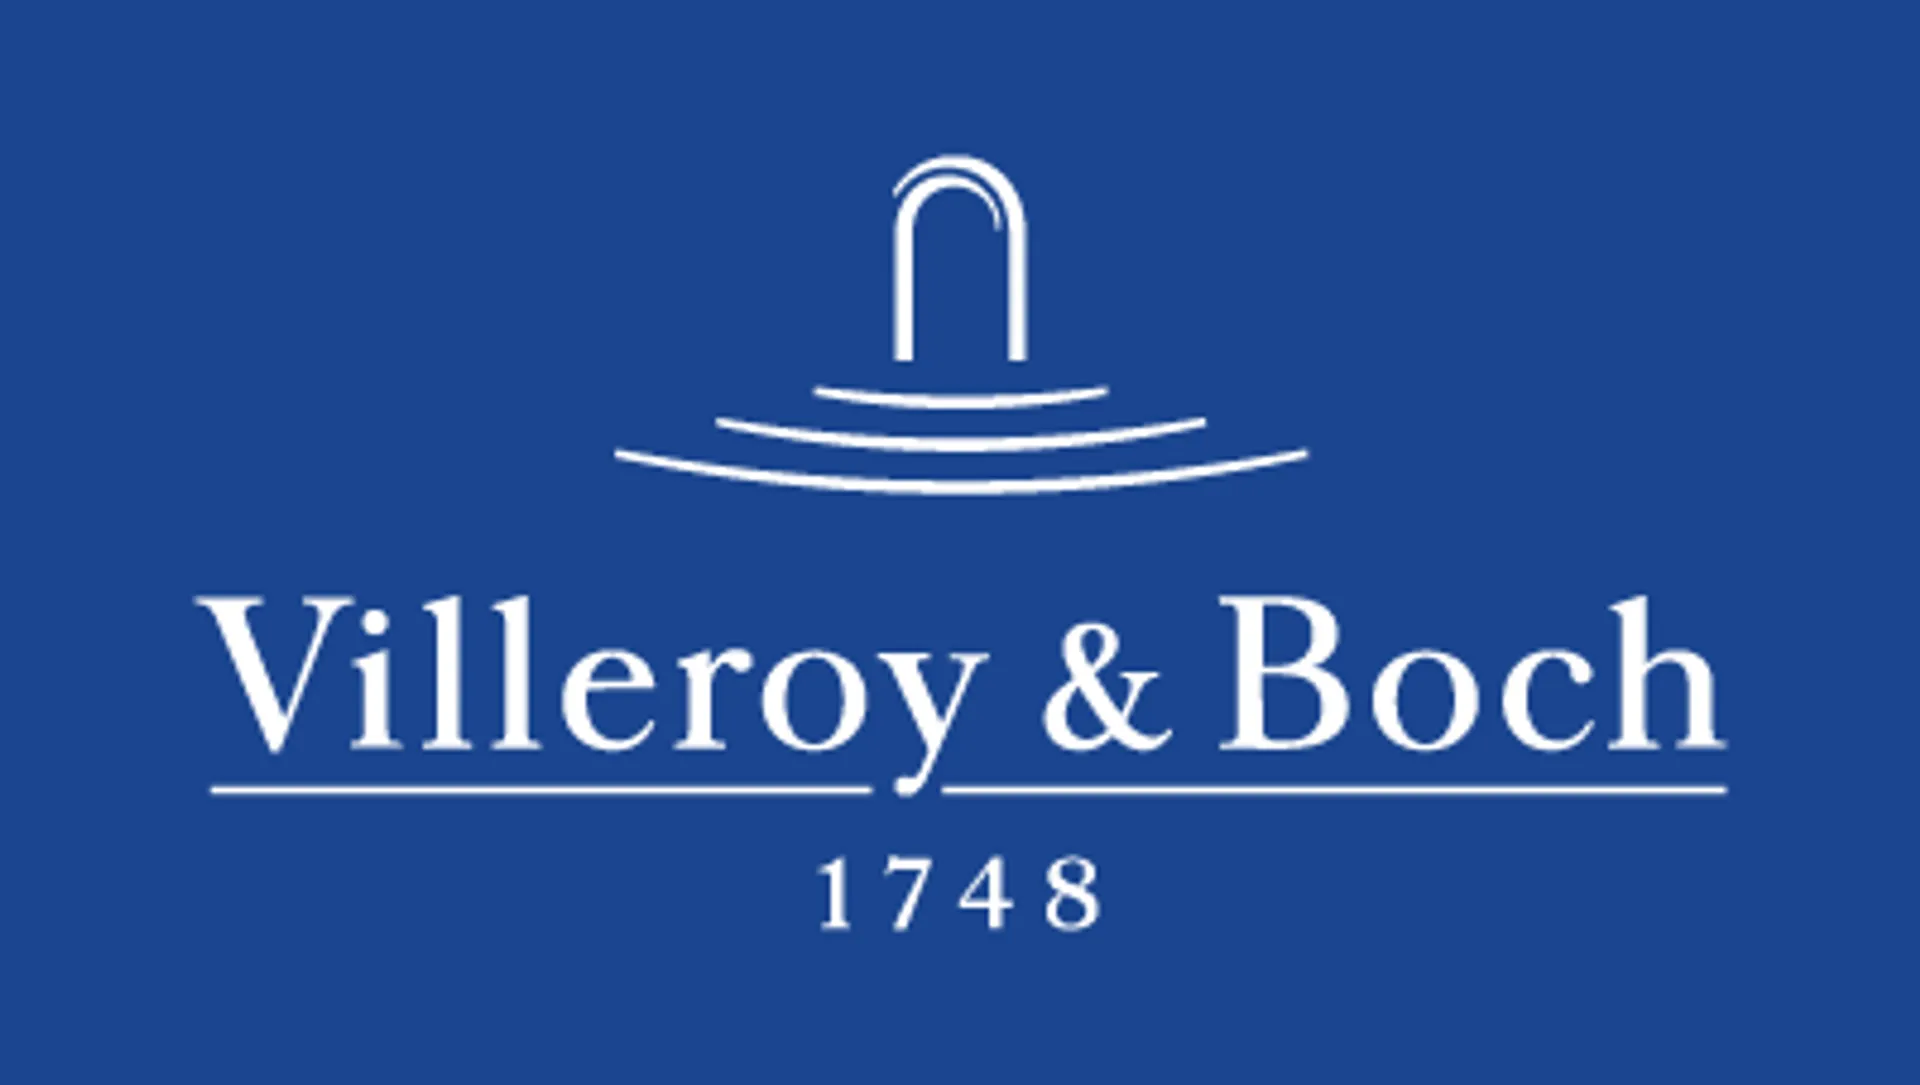 VILLEROY & BOCH logo die aktuell Flugblatt